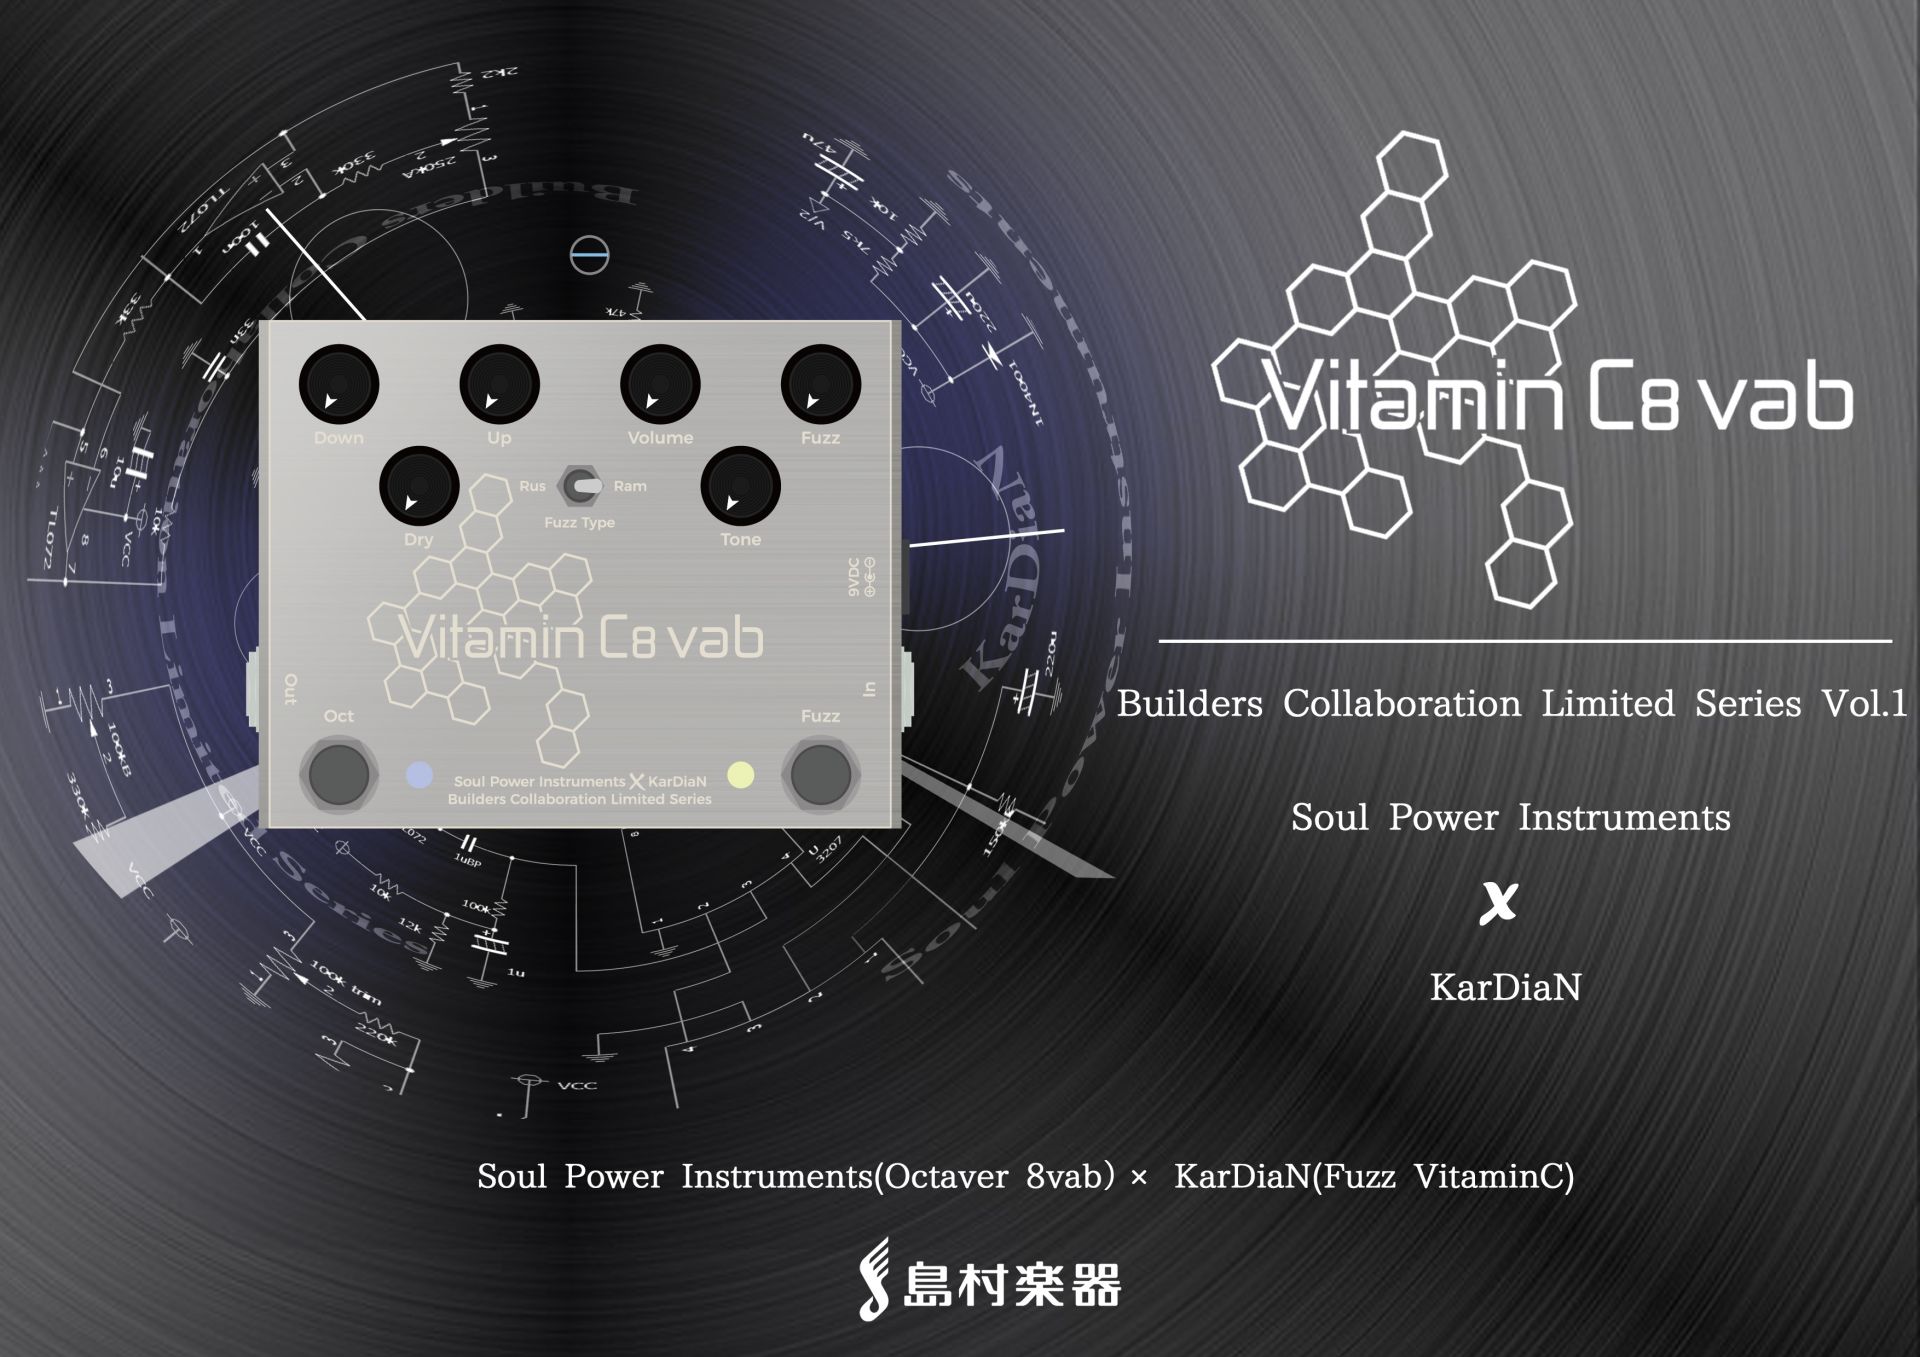 【エフェクタービルダーコラボモデル】第1弾Soul Power Instruments×KarDiaN “Vitamin C8 vab”が11月30日発売！